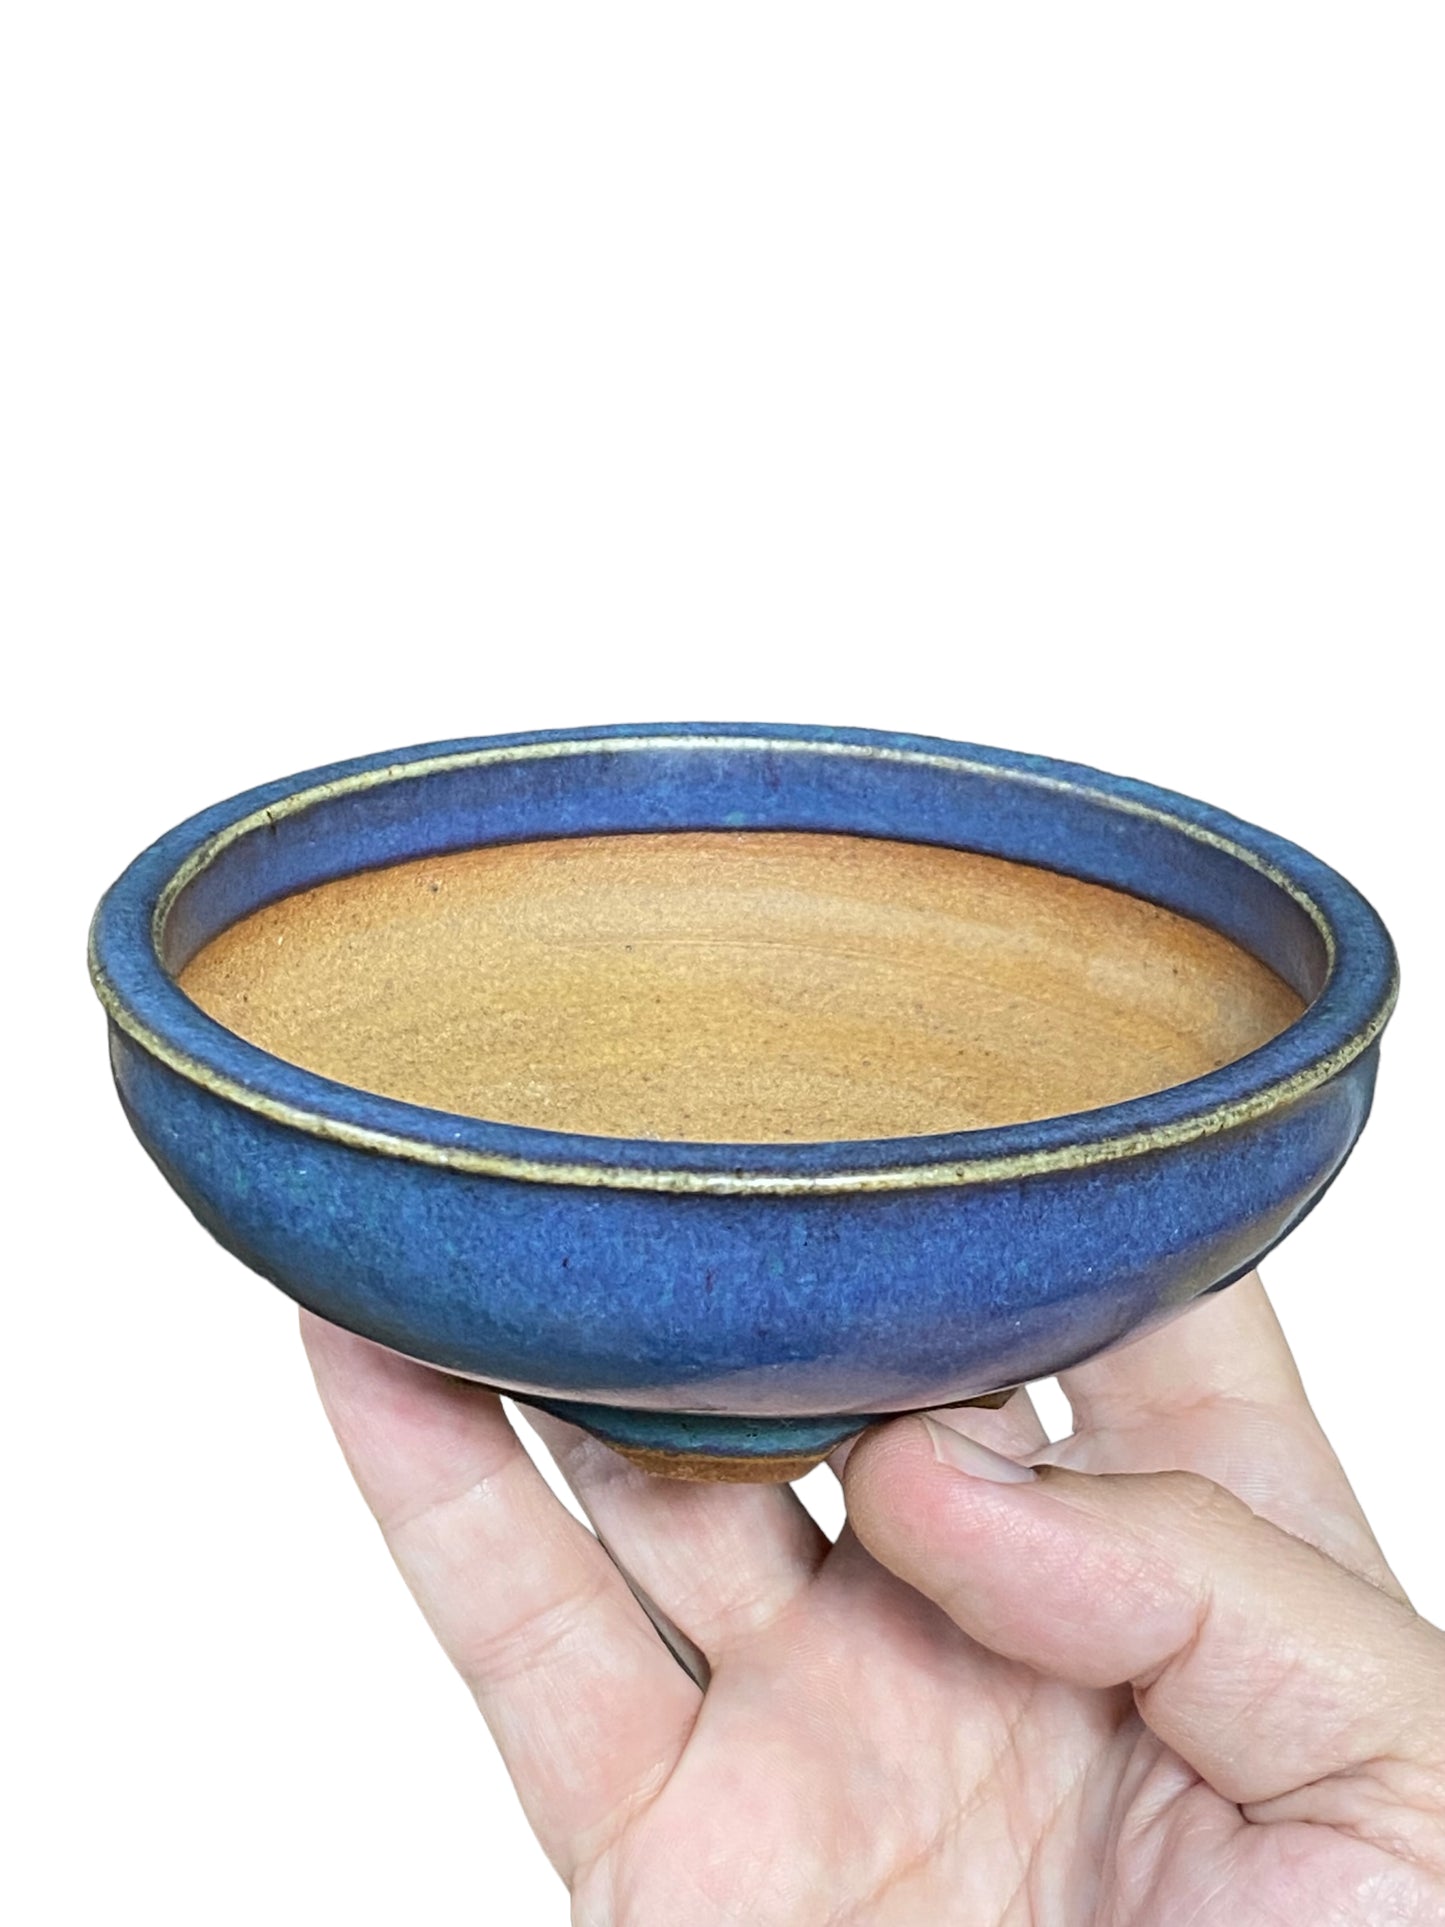 Shoseki - Rare Older Blue Glazed Bonsai Pot